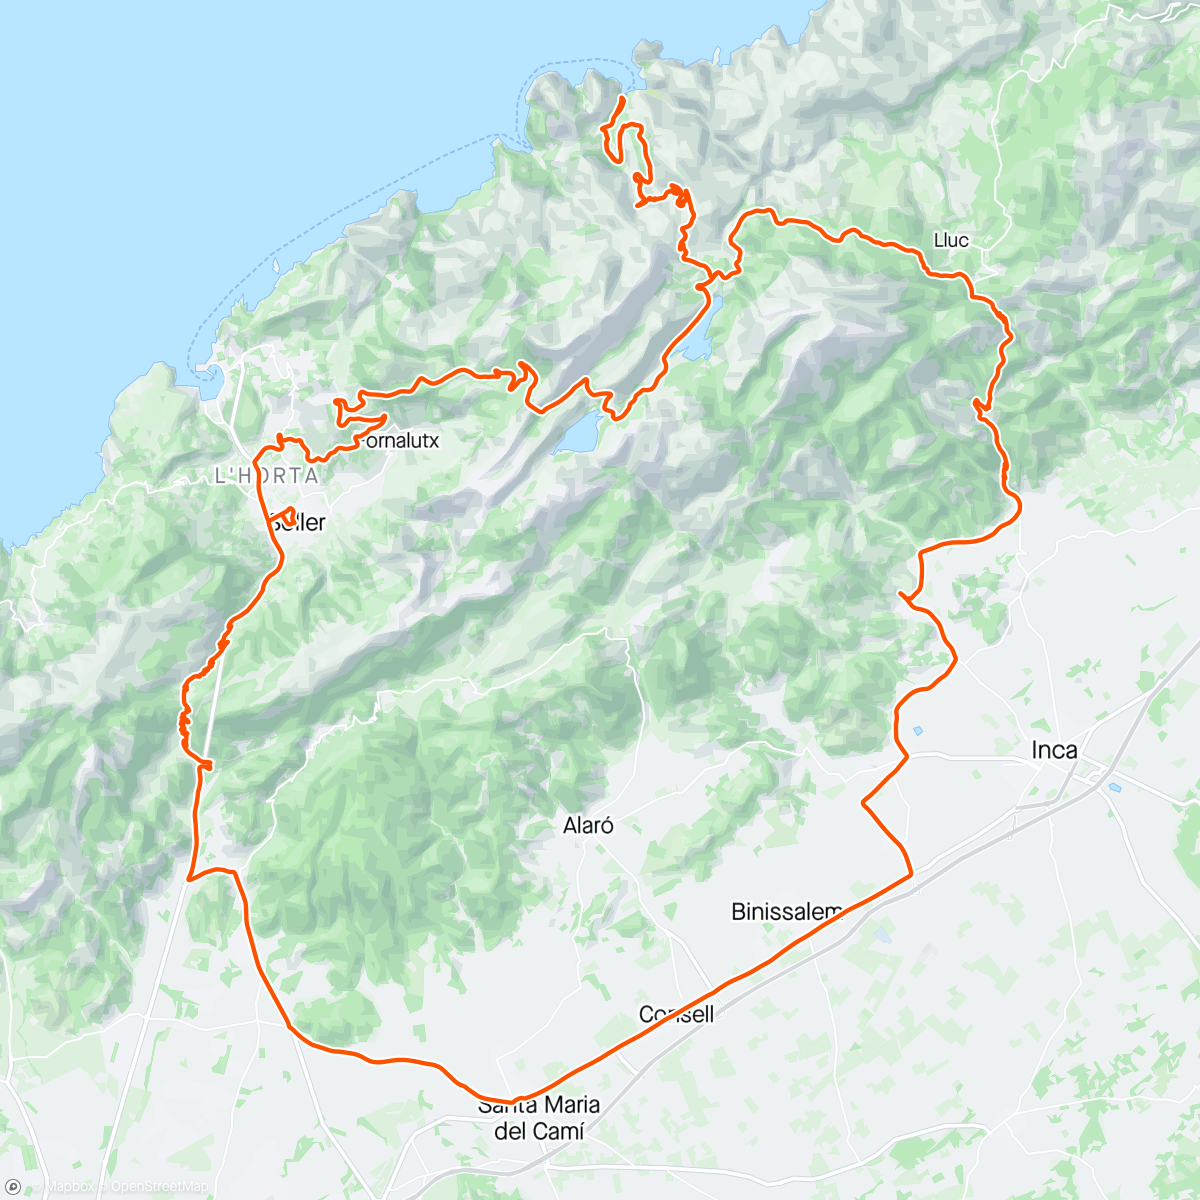 Mapa da atividade, Bakkedag: col de sabtella, sa Calobra, Puig Major og col del Soller 👍😁